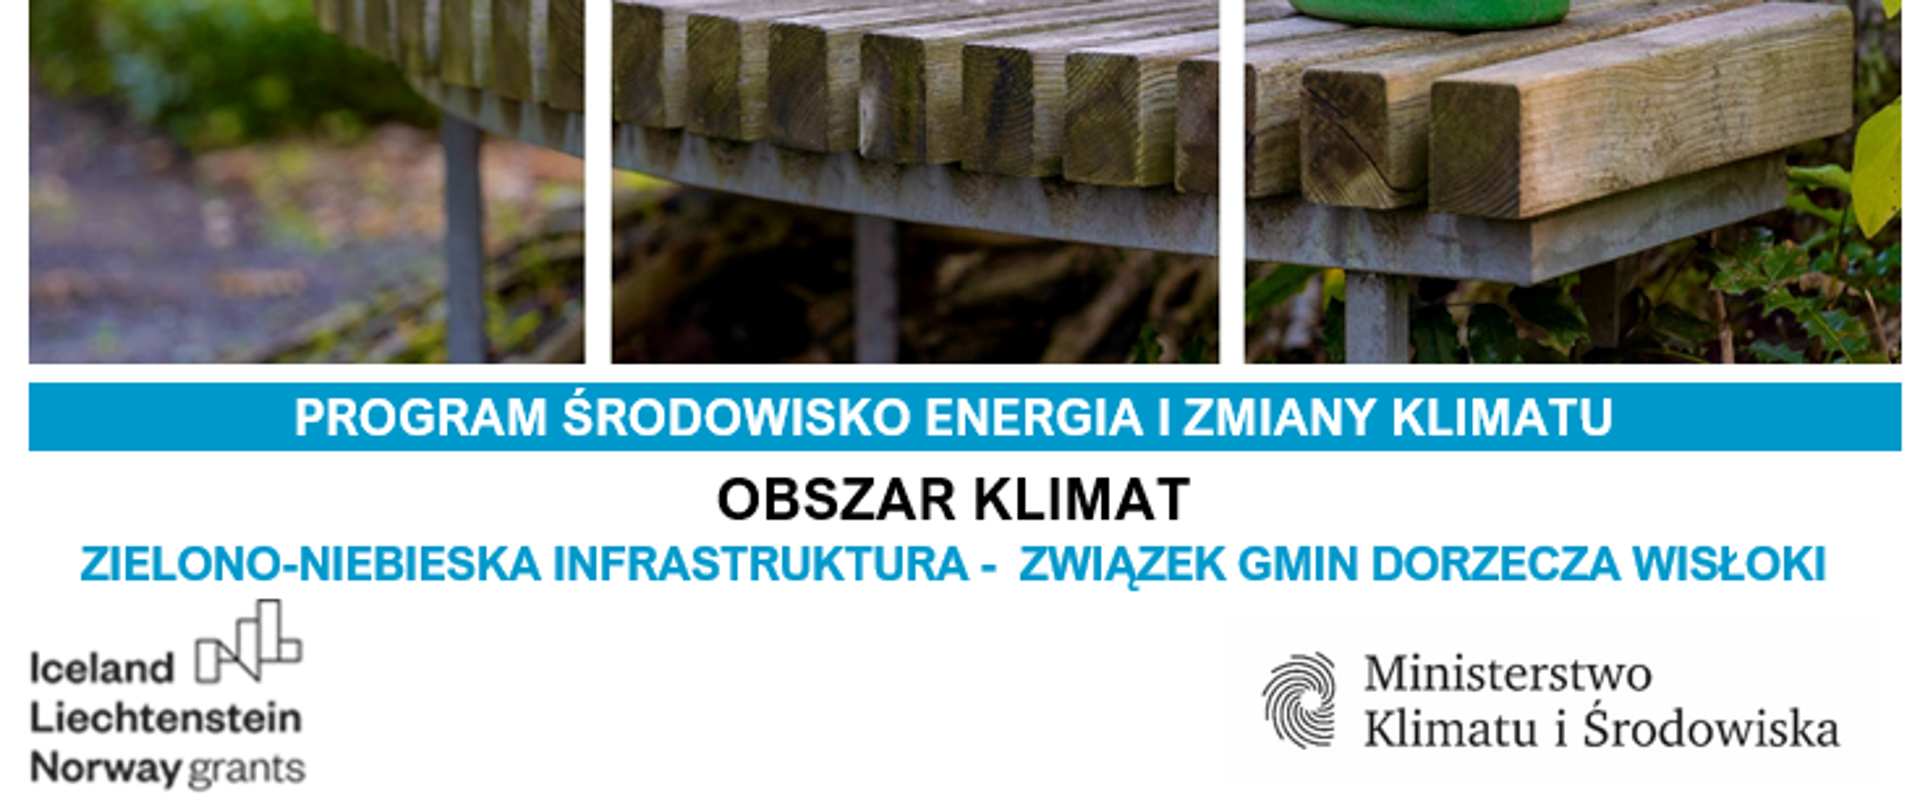 Projekt Realizacja inwestycji w zakresie zielono-niebieskiej infrastruktury na terenie gmin należących do Związku Gmin Dorzecza Wisłoki